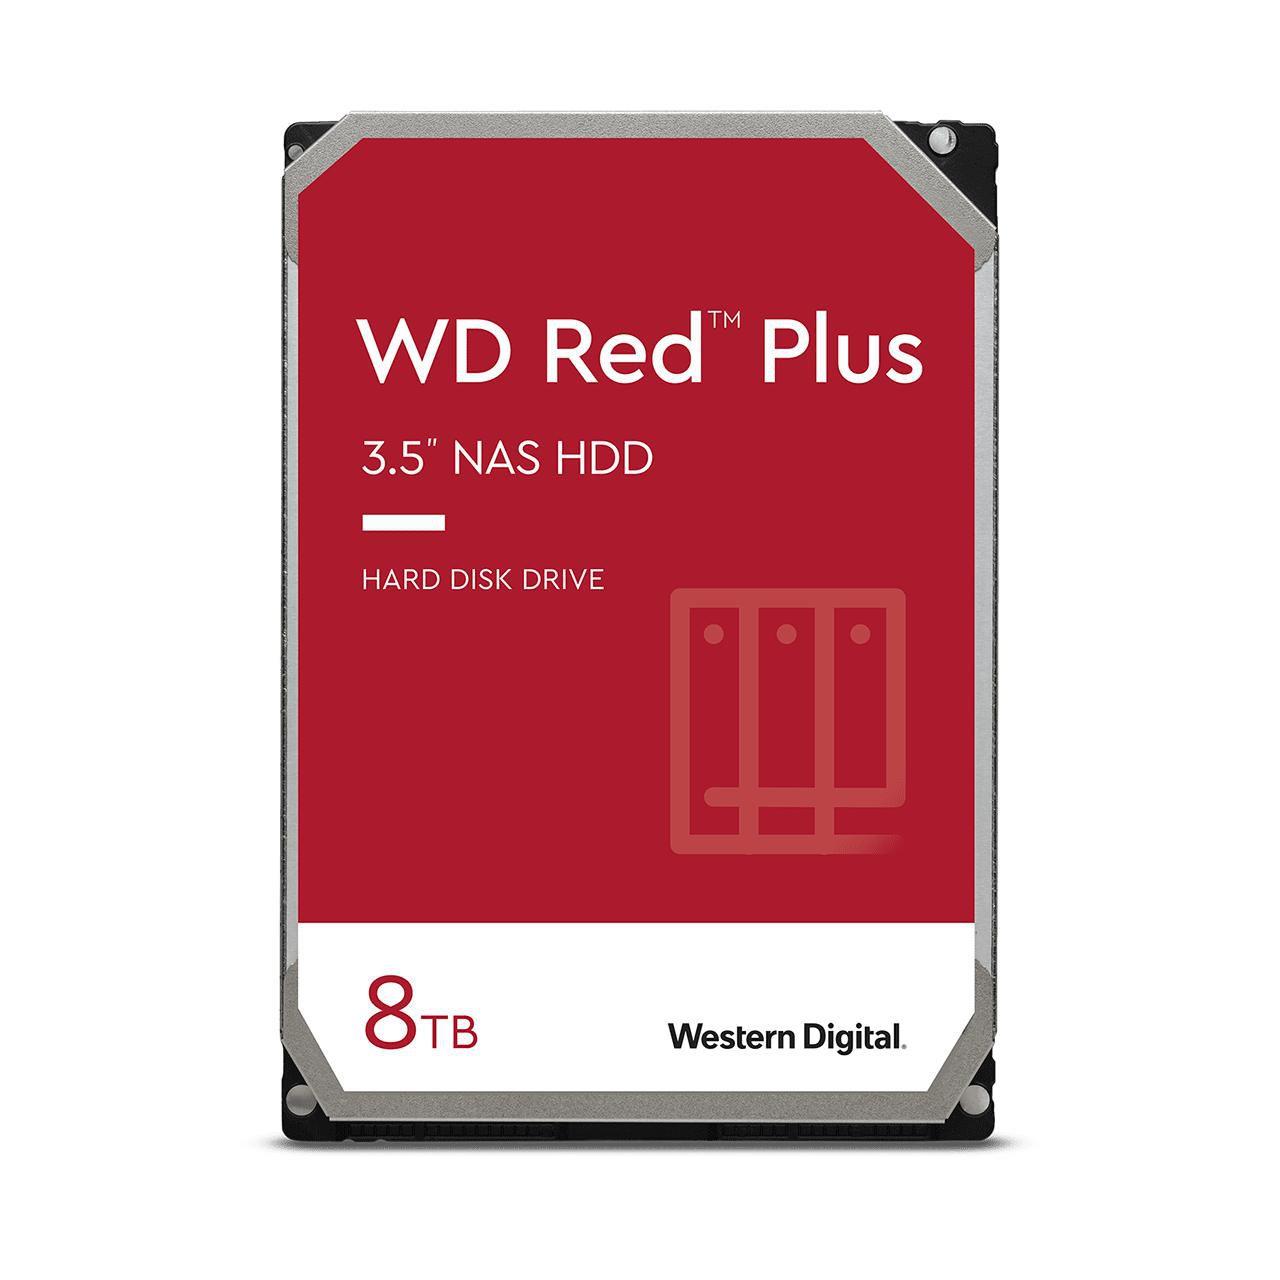 Afbeeldingen van Red Plus 8TB SATA 6Gb/s - WD80EFZZ